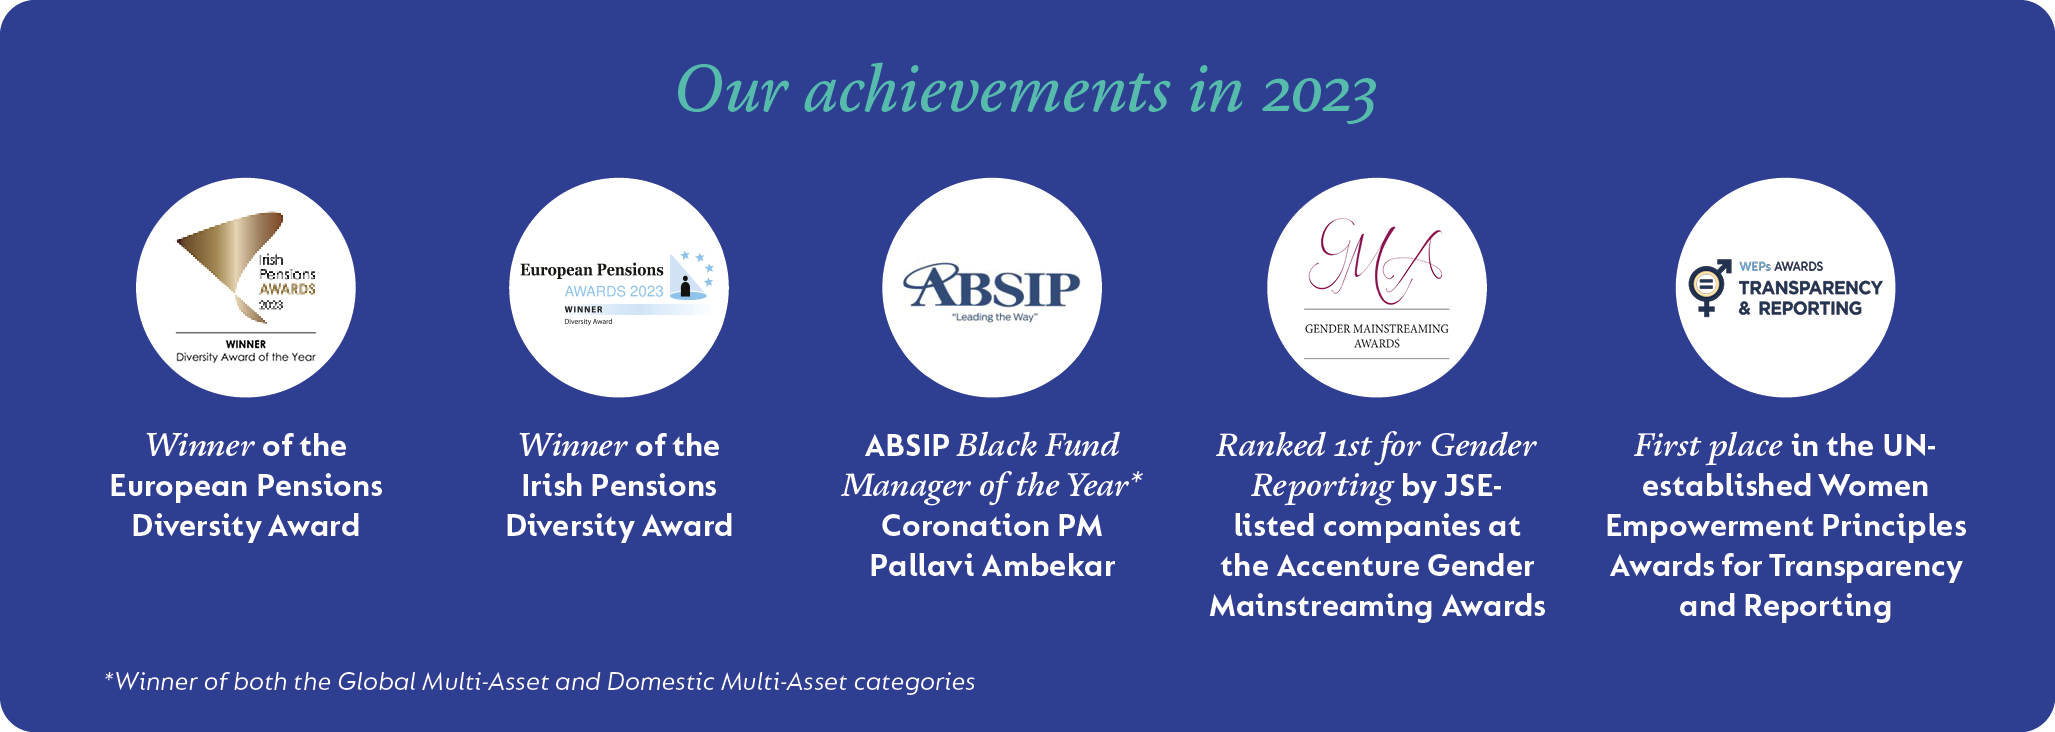 our-achievements-2023.png